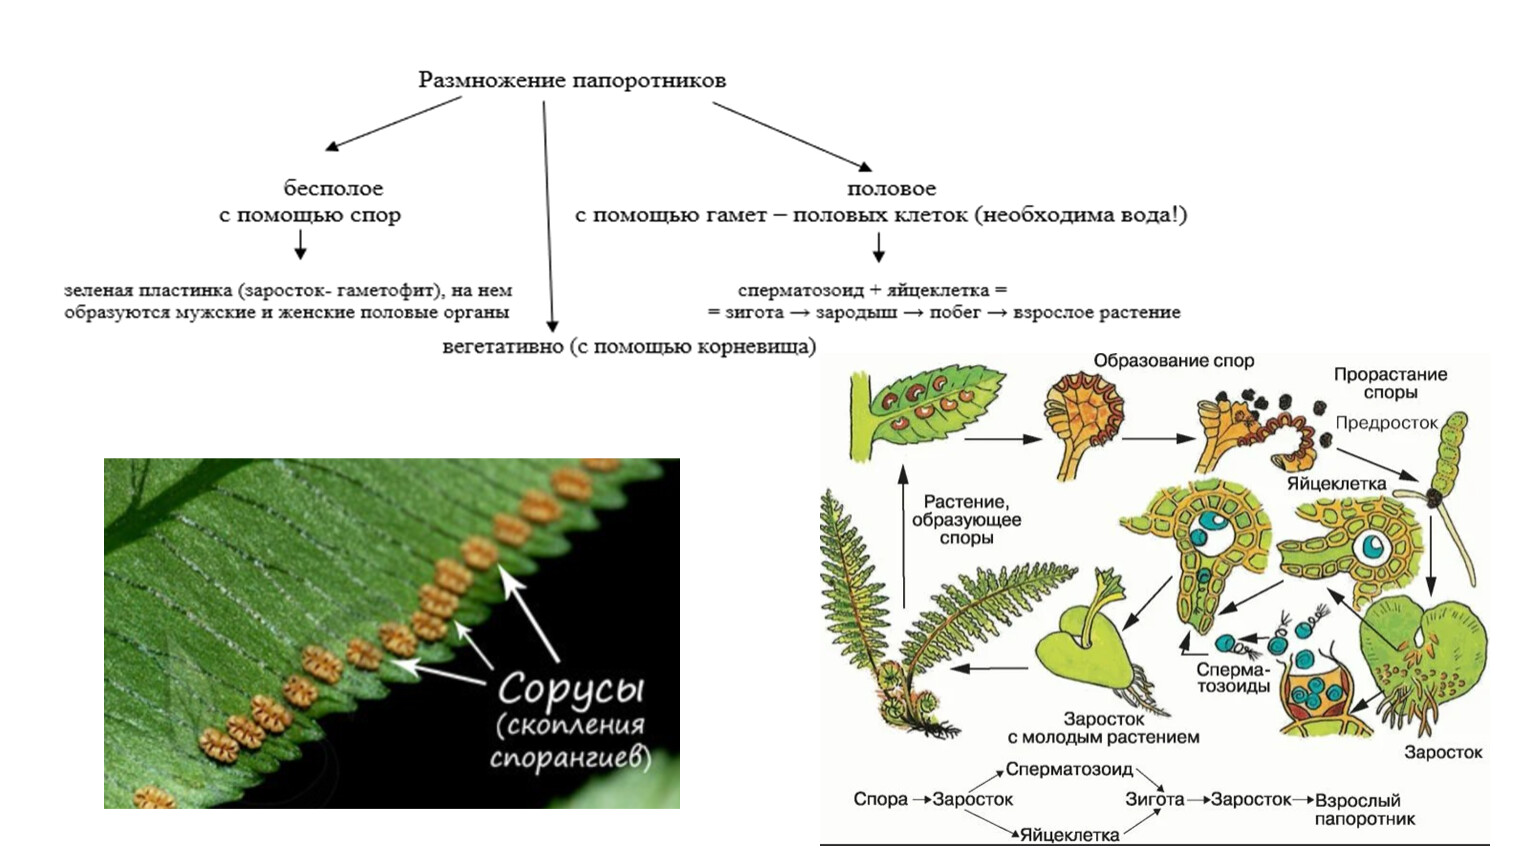 Спора щитовник мужской. Гаметофит плауна. Жизненный цикл папоротника орляка. Заросток плаунов. Схема развития споровых растений.